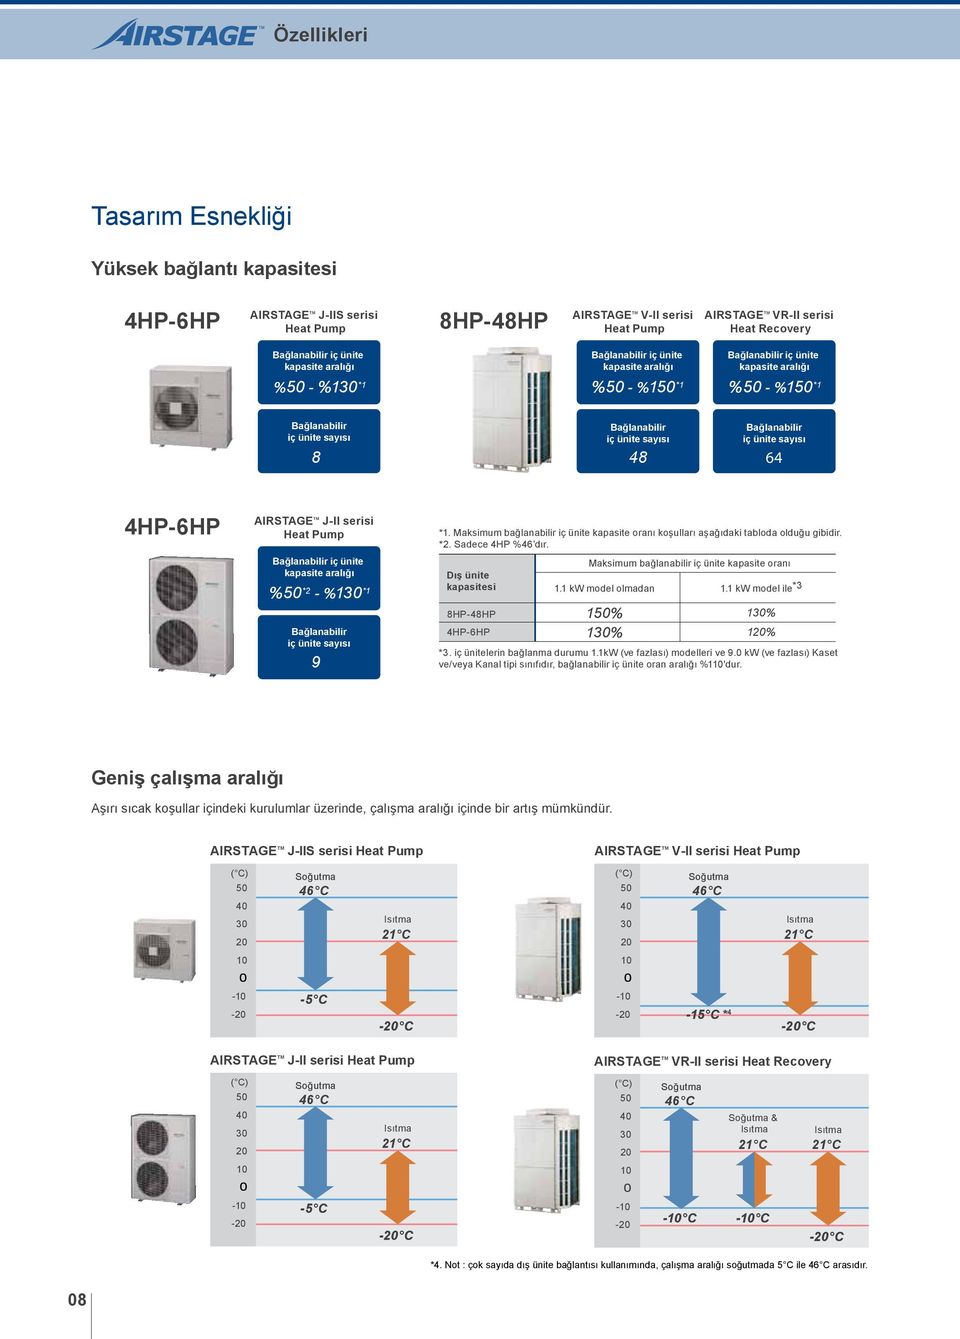 Bağlanabilir iç ünite sayısı 64 4HP6HP AIRSTAGE TM JII serisi Heat Pump Bağlanabilir iç ünite kapasite aralığı %50 *2 %30 * Bağlanabilir iç ünite sayısı 9 *.